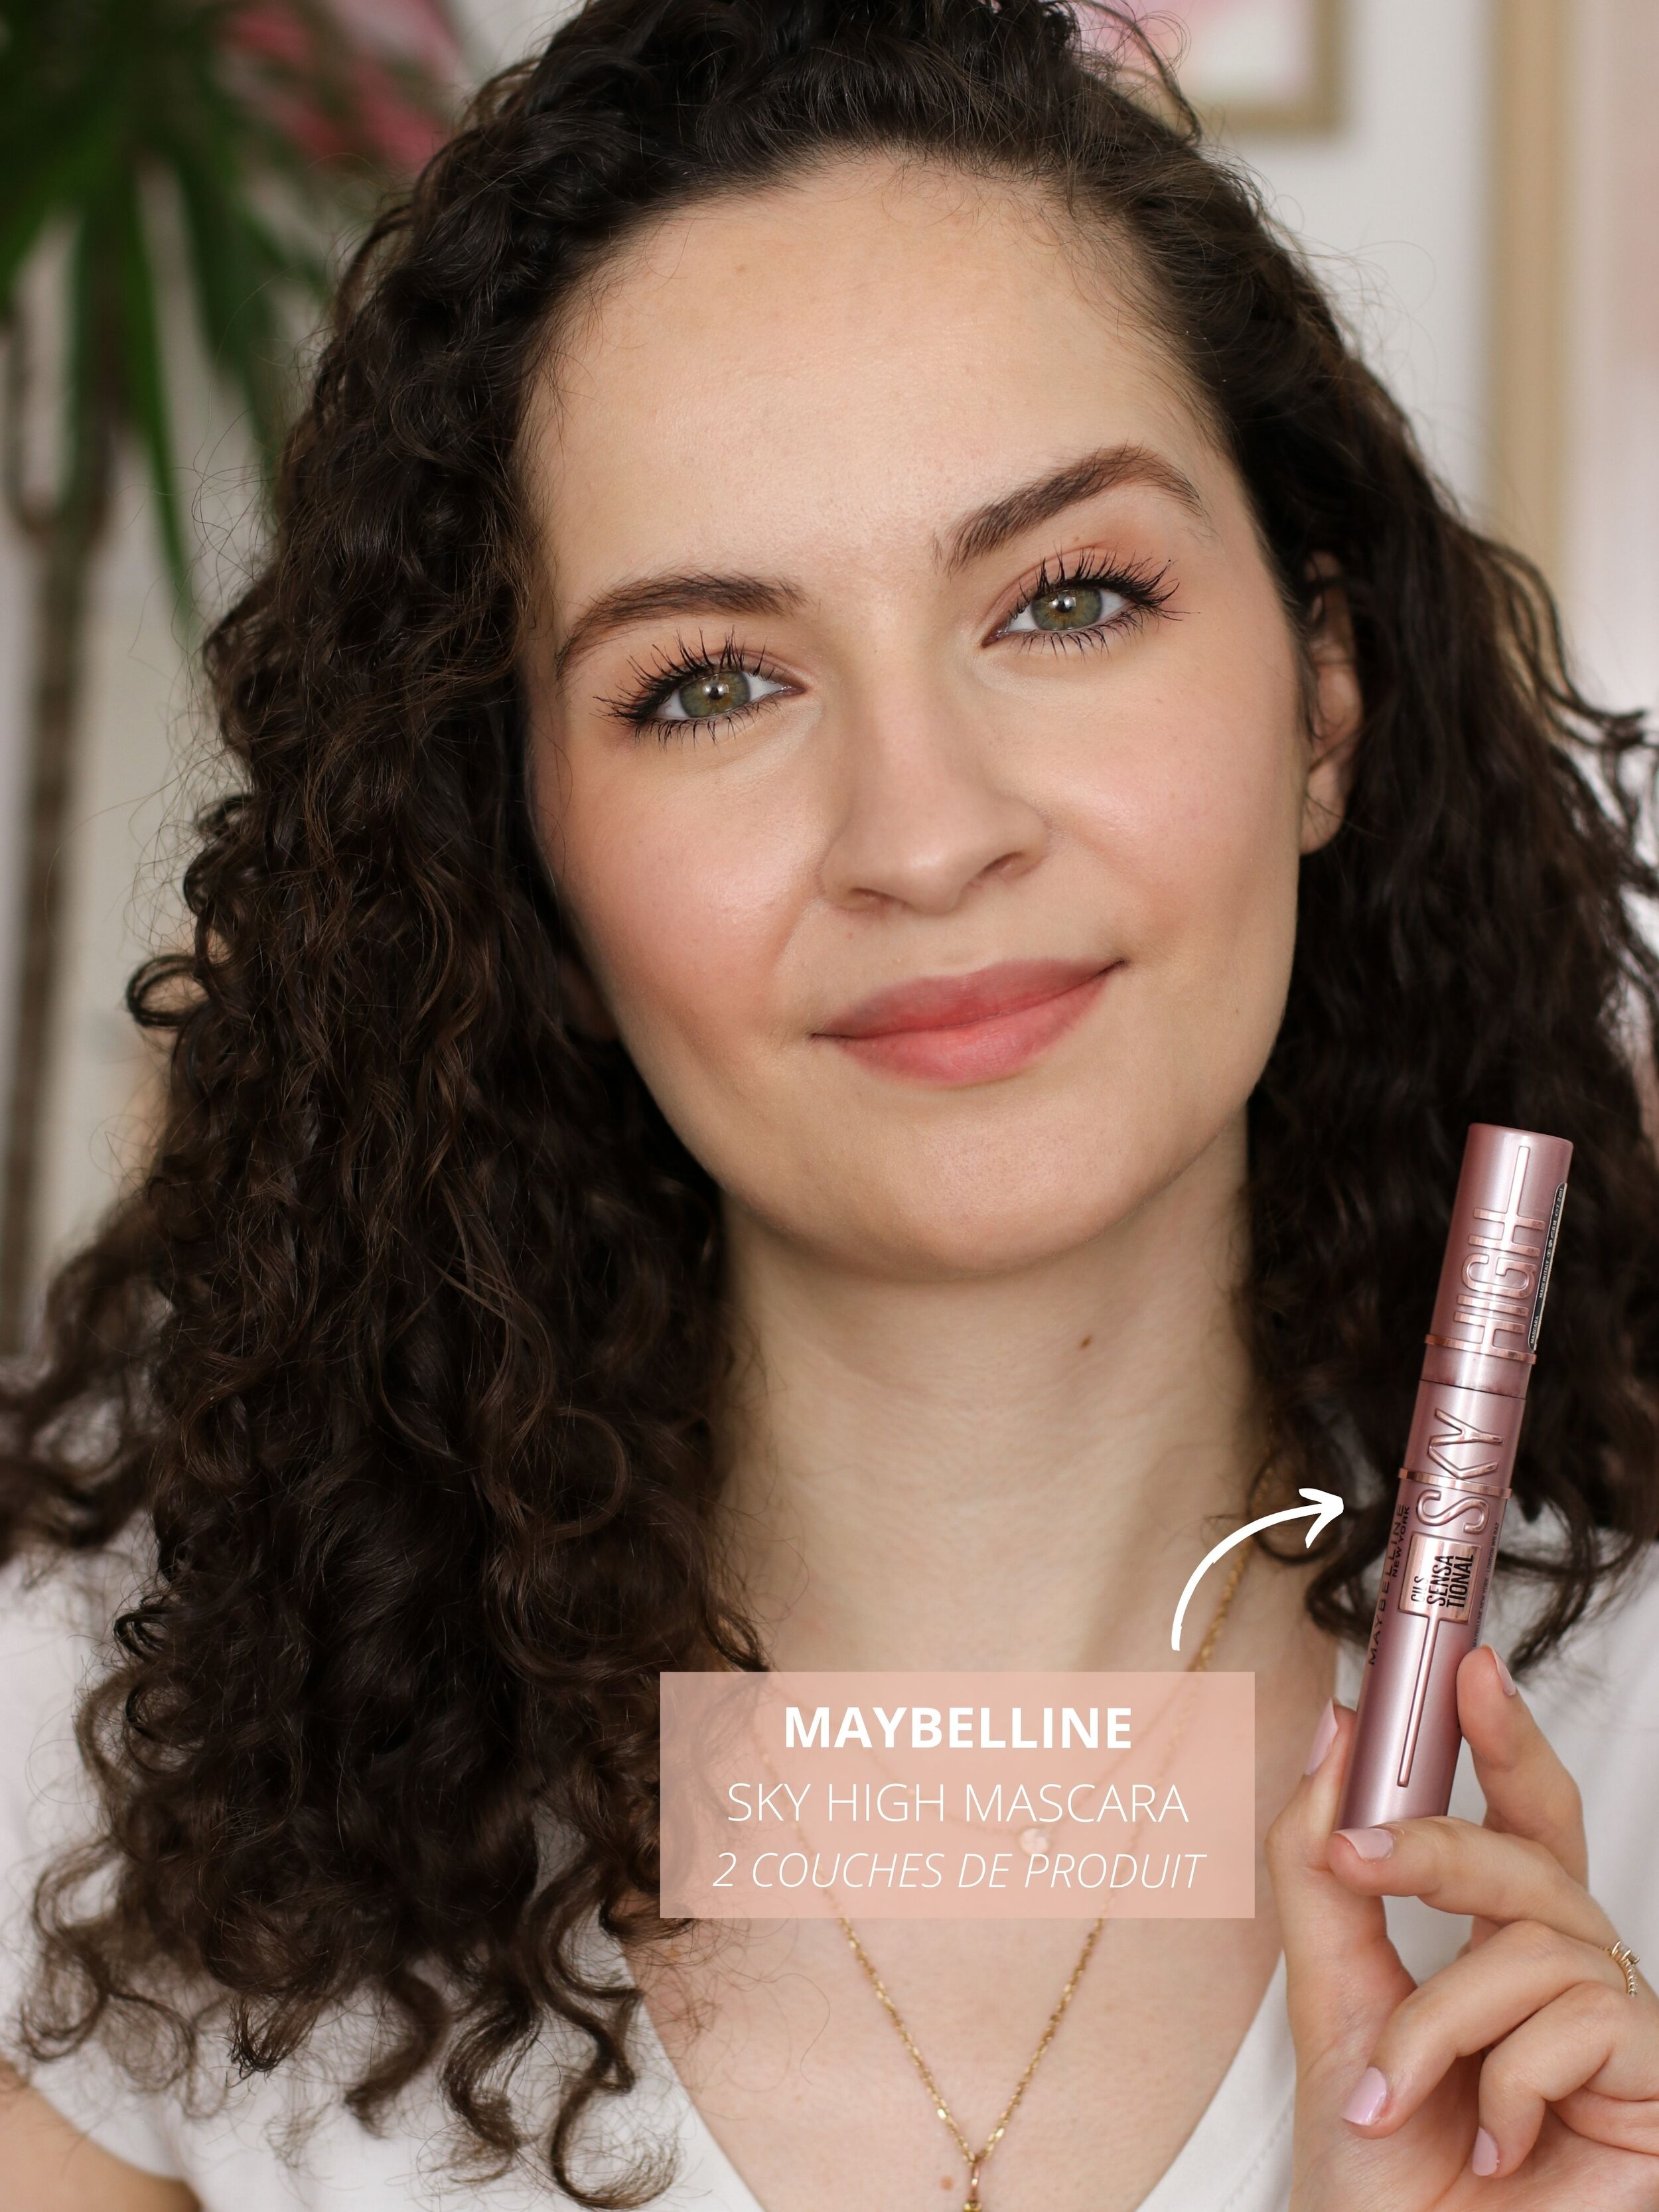 Maybelline Sky High Mascara, un succès mérité ? — Pauuulette - Blog Makeup